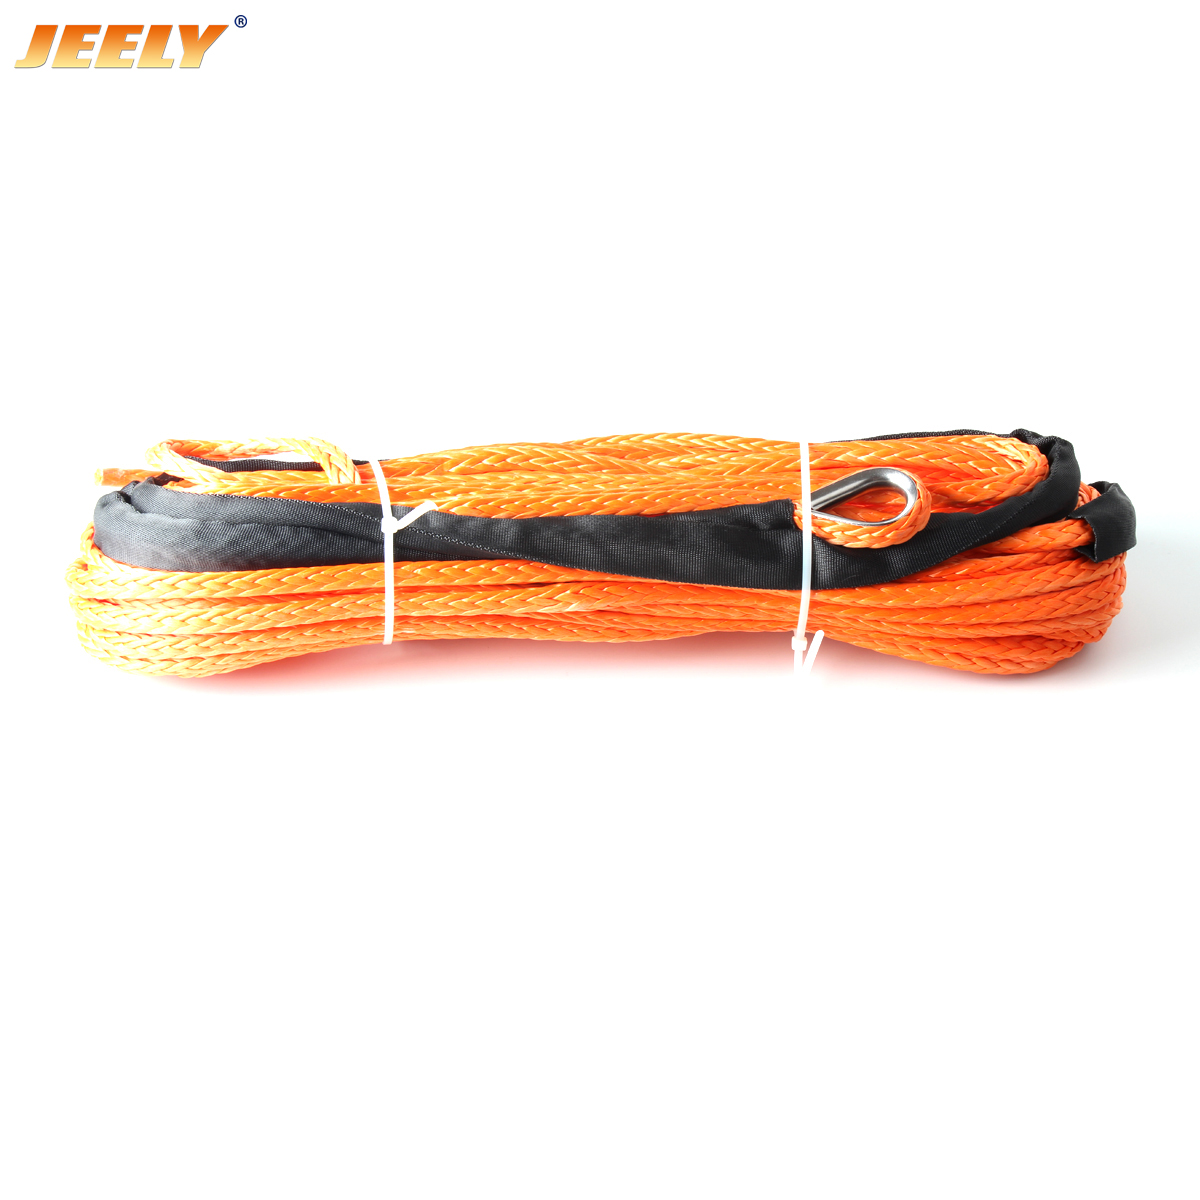 Cable de cabrestante de remolque UHMWPE de fibra sintética de 9mm x 12m 3/8 ''x 40' con dedal para cuerda de cabrestante ATV/UTV